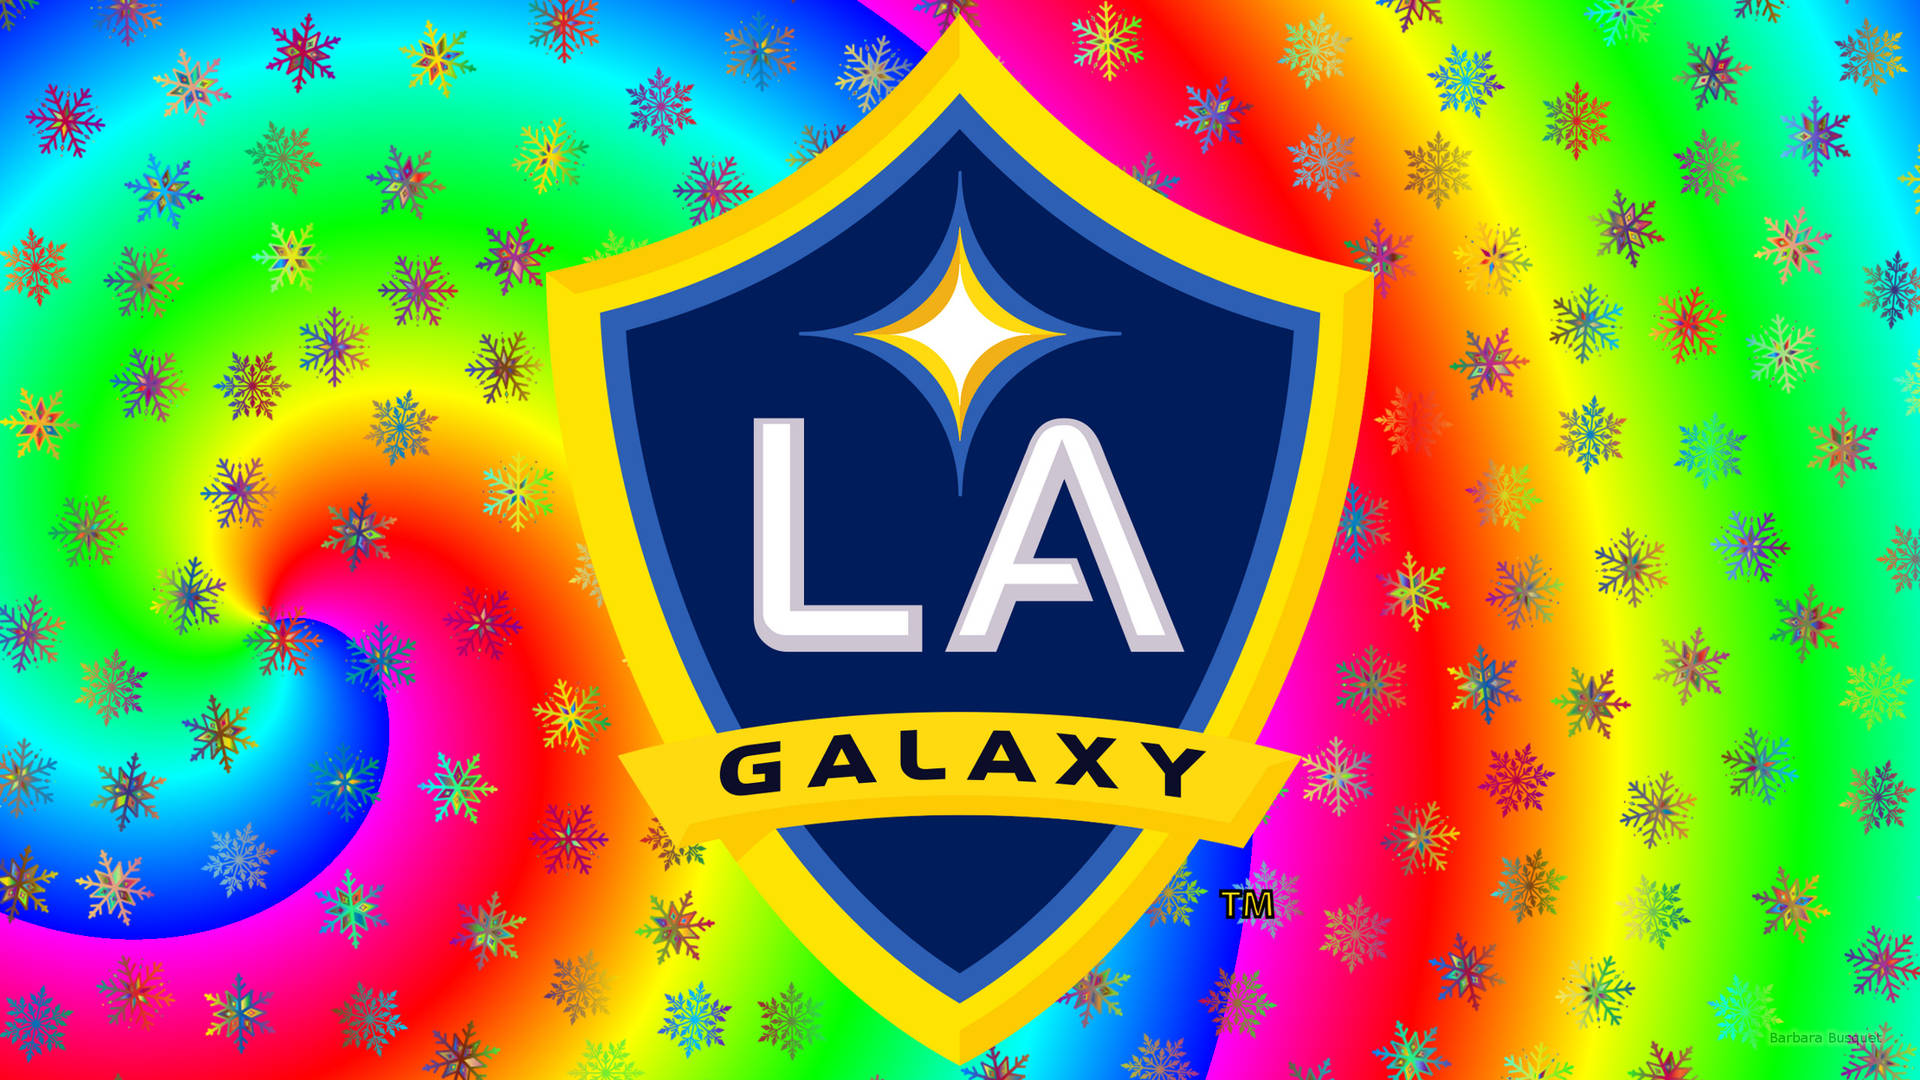 Lagalaxy Färgglad Logotyp (or La Galaxys Färgglada Logotyp) Wallpaper